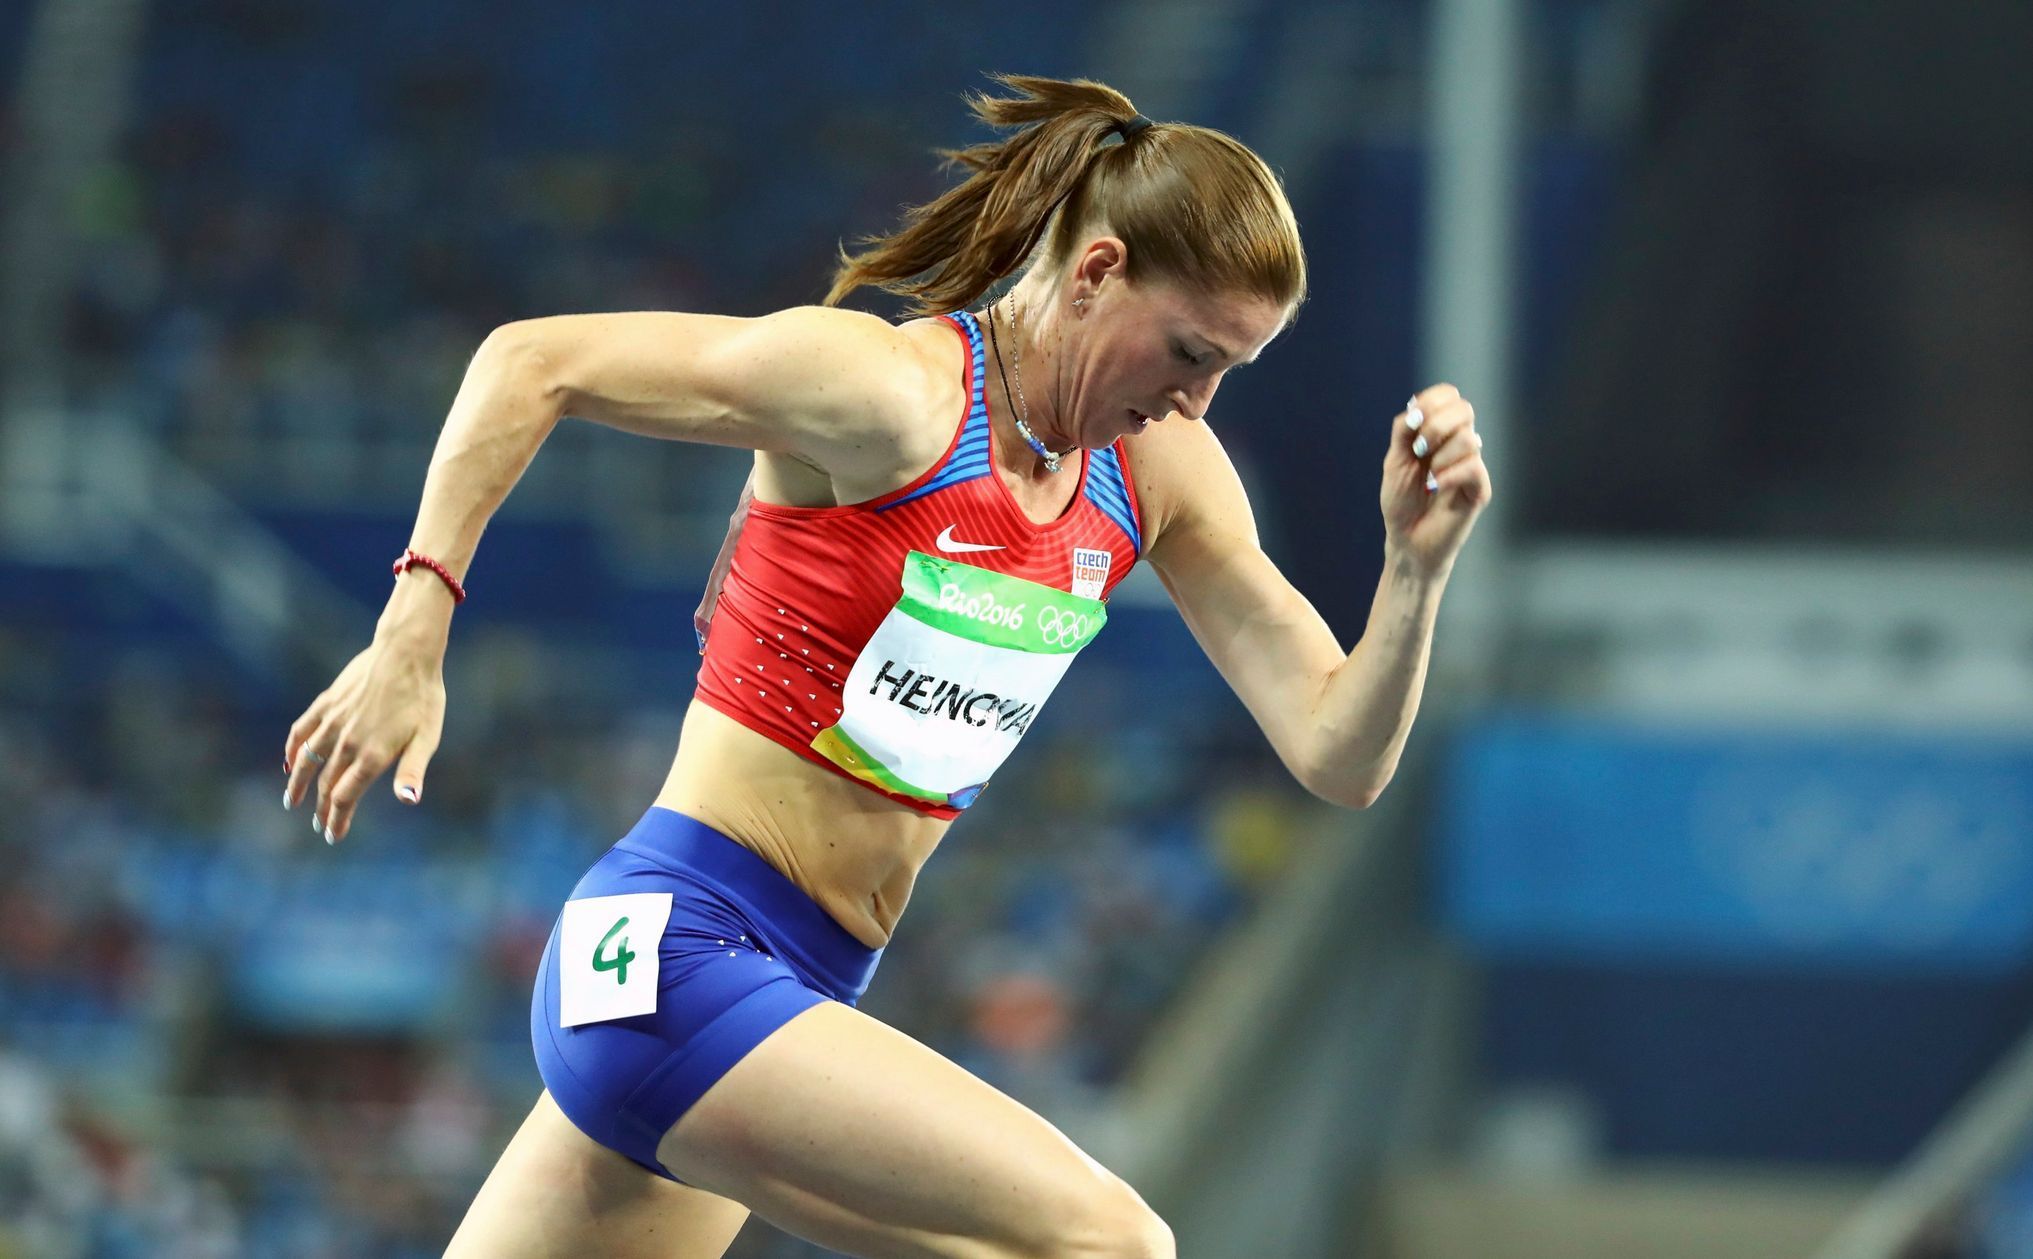 OH 2016, atletika - 400 m př.: Zuzana Hejnová